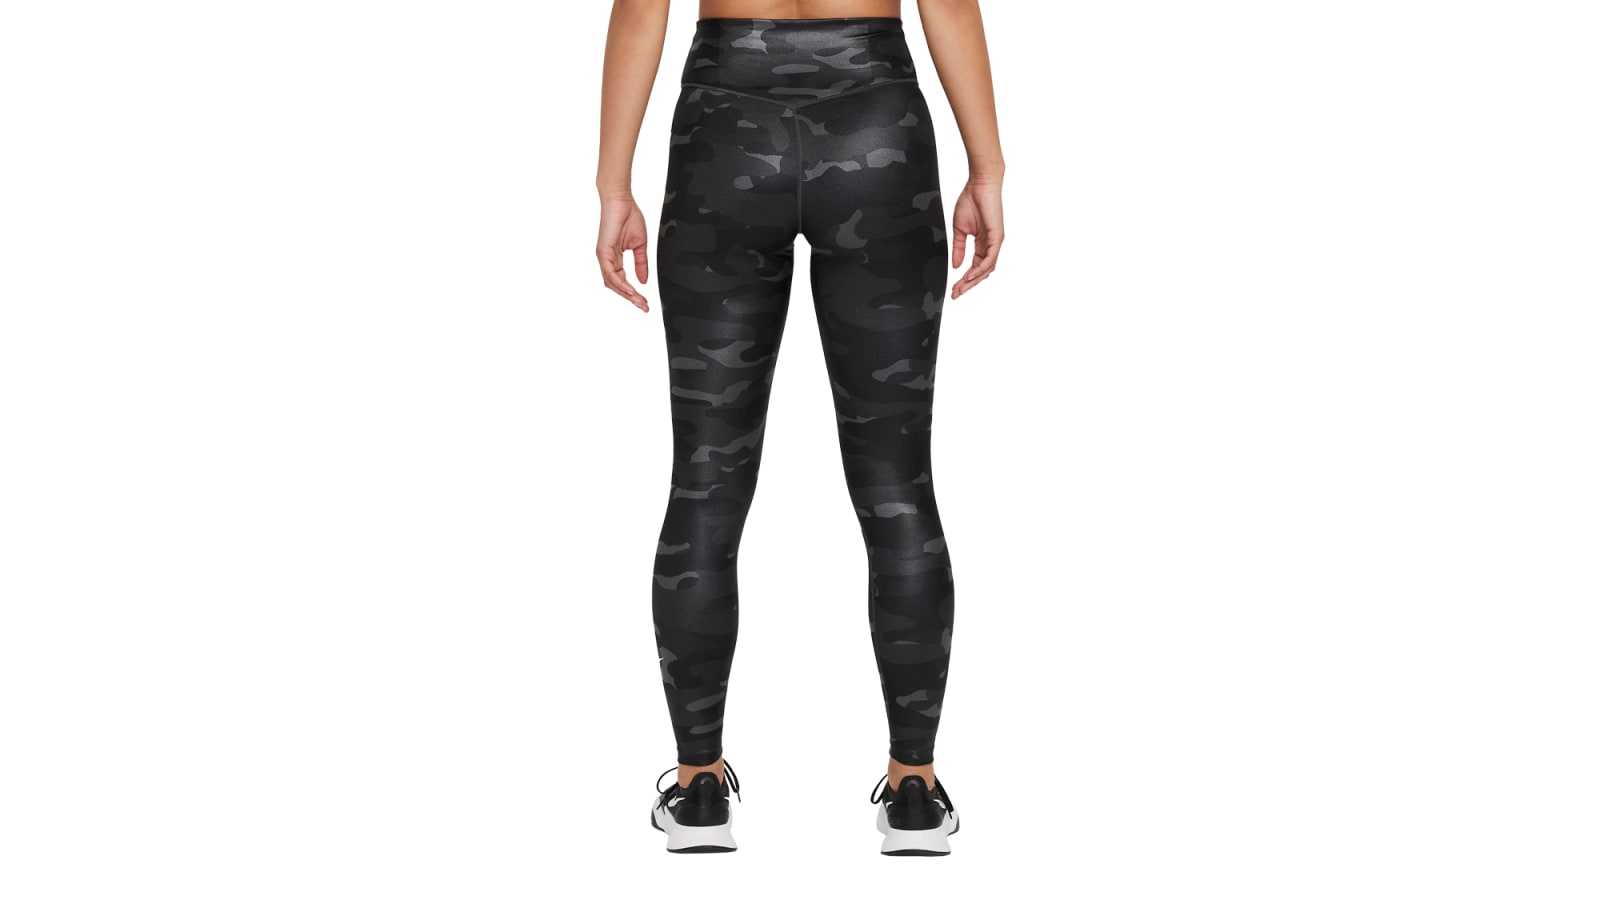 Nike, Pants & Jumpsuits, Nike Womens Black Drifit Leggings Pants Size L